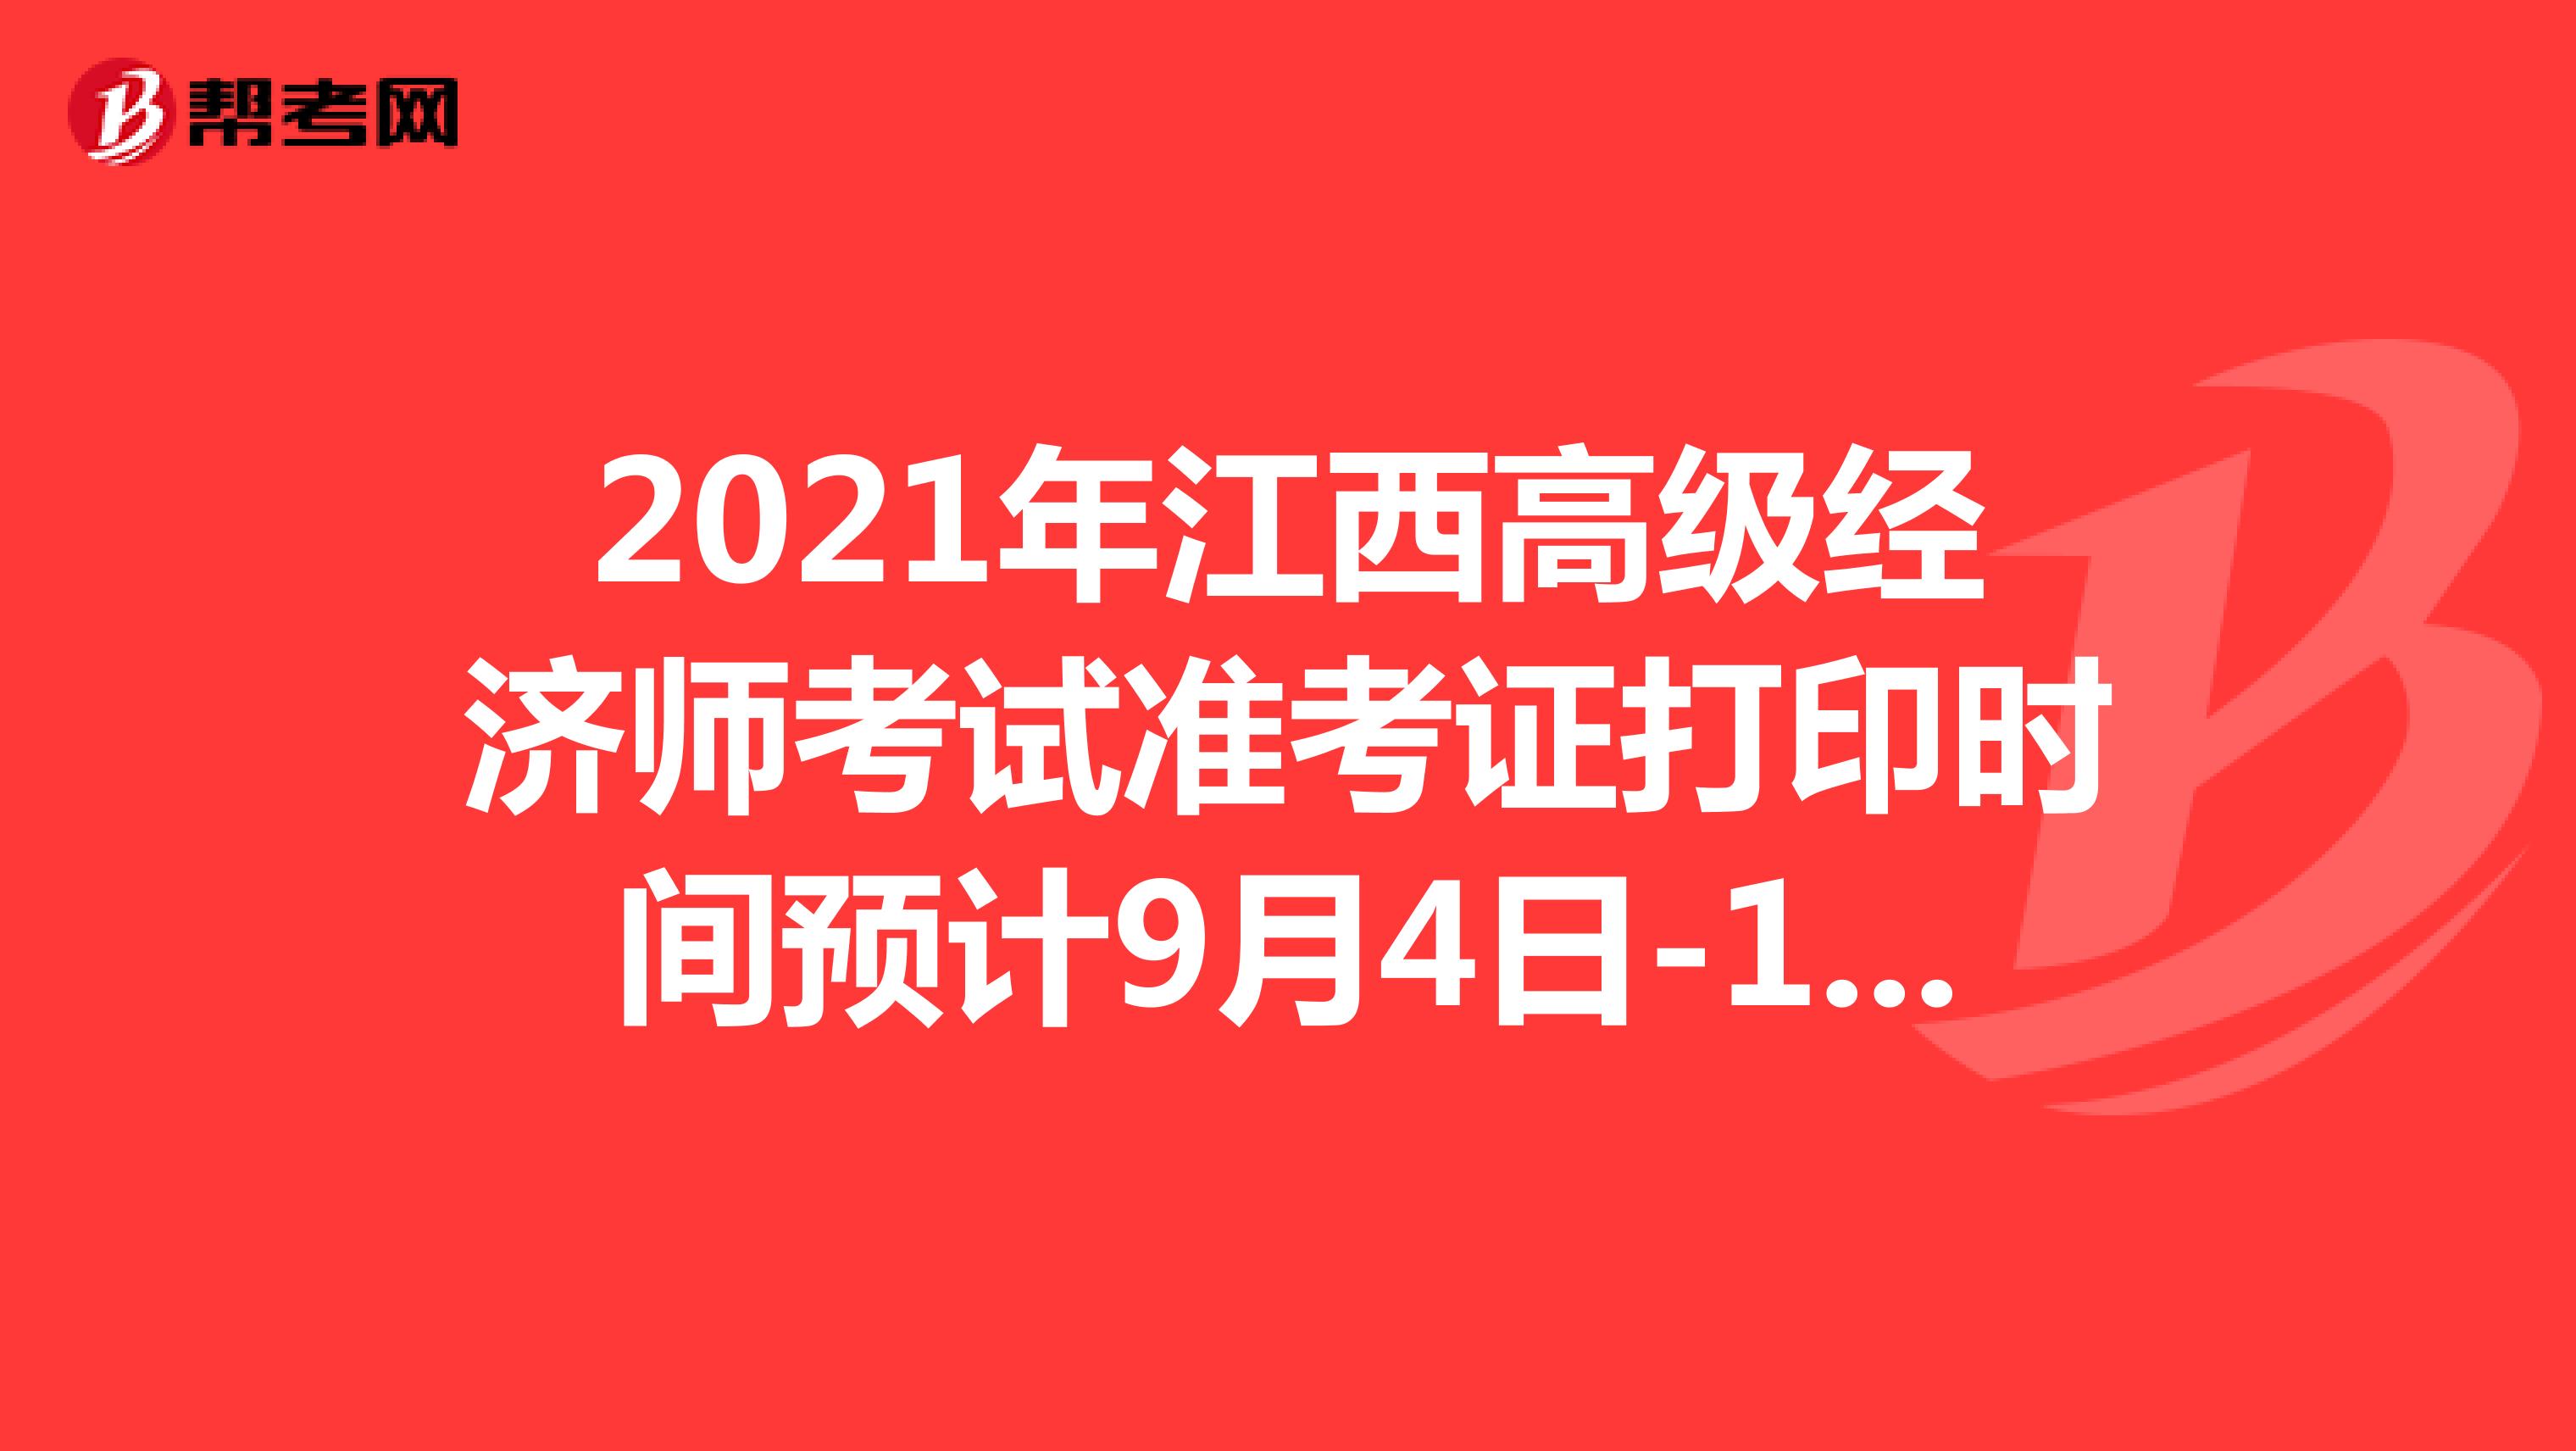 2021年江西高级经济师考试准考证打印时间预计9月4日-11日